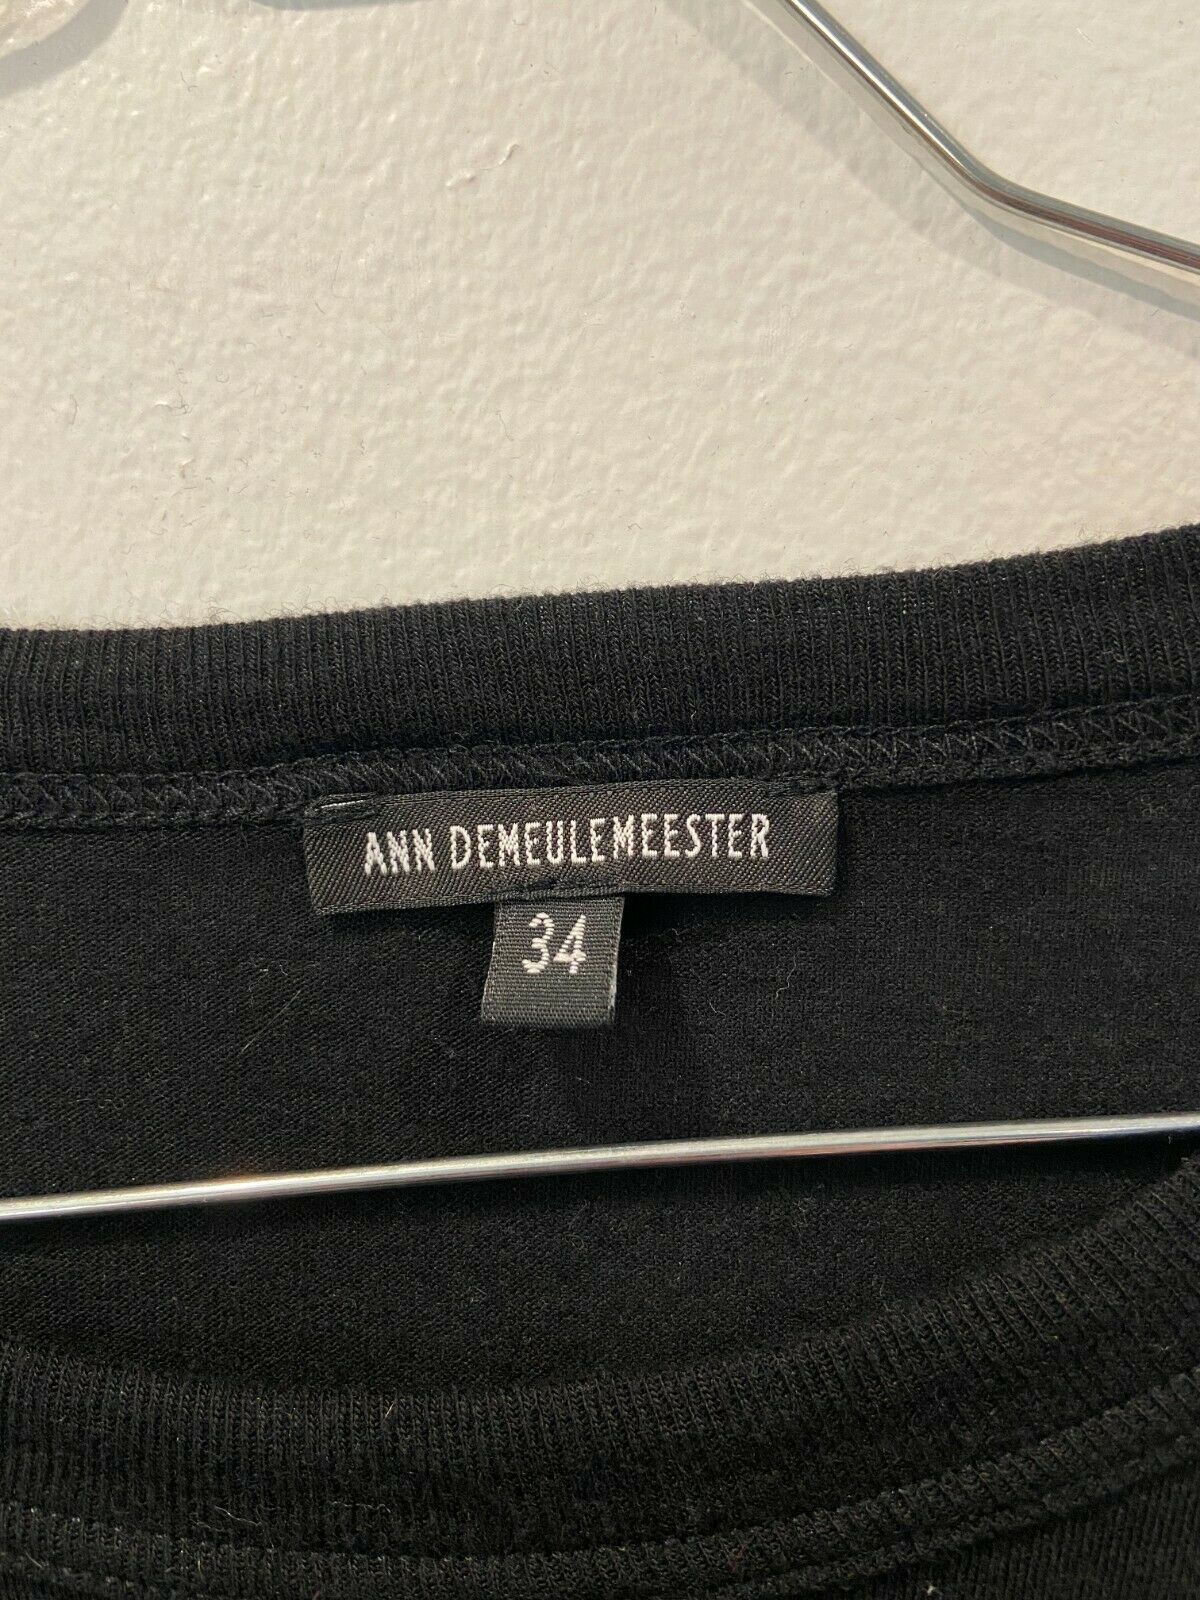 Ann Demeulemeester Black Shirt